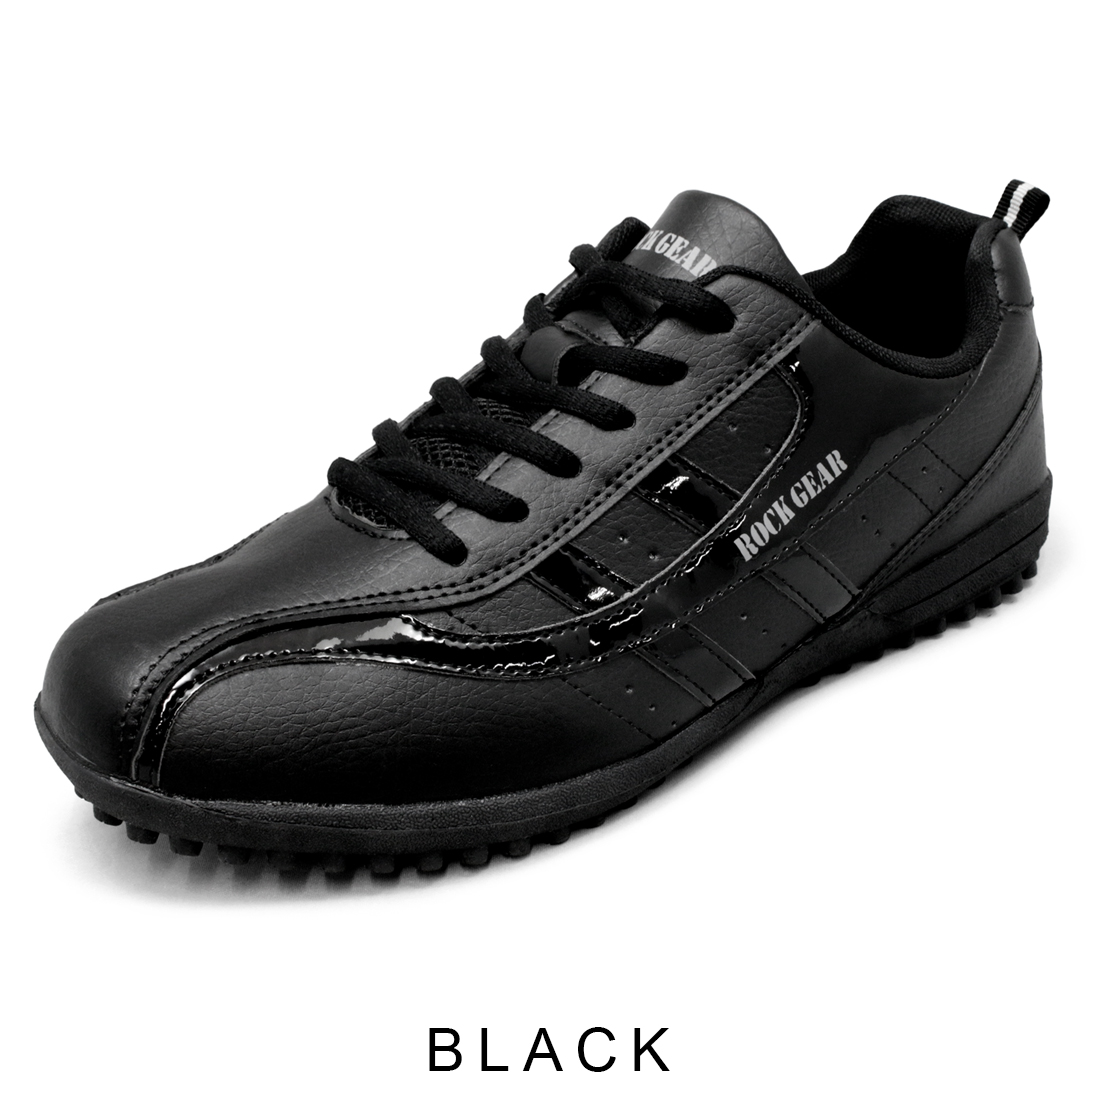 ゴルフシューズ メンズ 軽量 スパイクレス ウォーキングシューズ 耐滑ラバー底 紐靴 紳士靴 黒 白 ROCKGEAR rg710